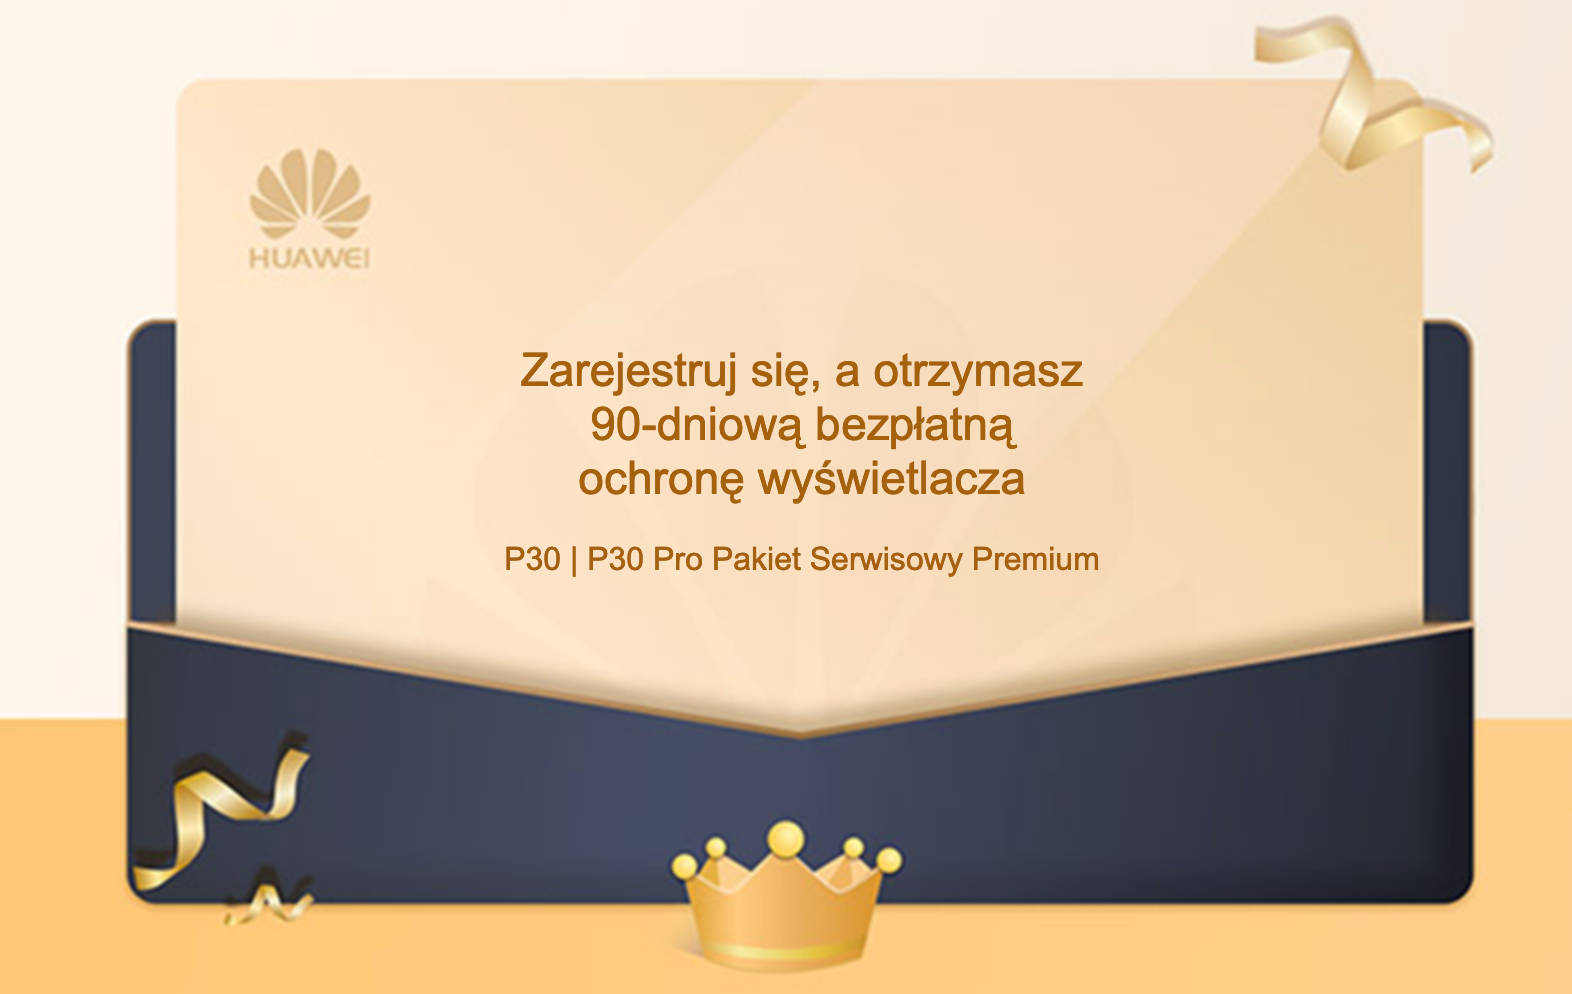 Huawei P30 Pro przedsprzedaż pakiet serwisowy premium ochrona wyświetlacza cena opinie specyfikacja techniczna gdzie kupić najtaniej w Polsce